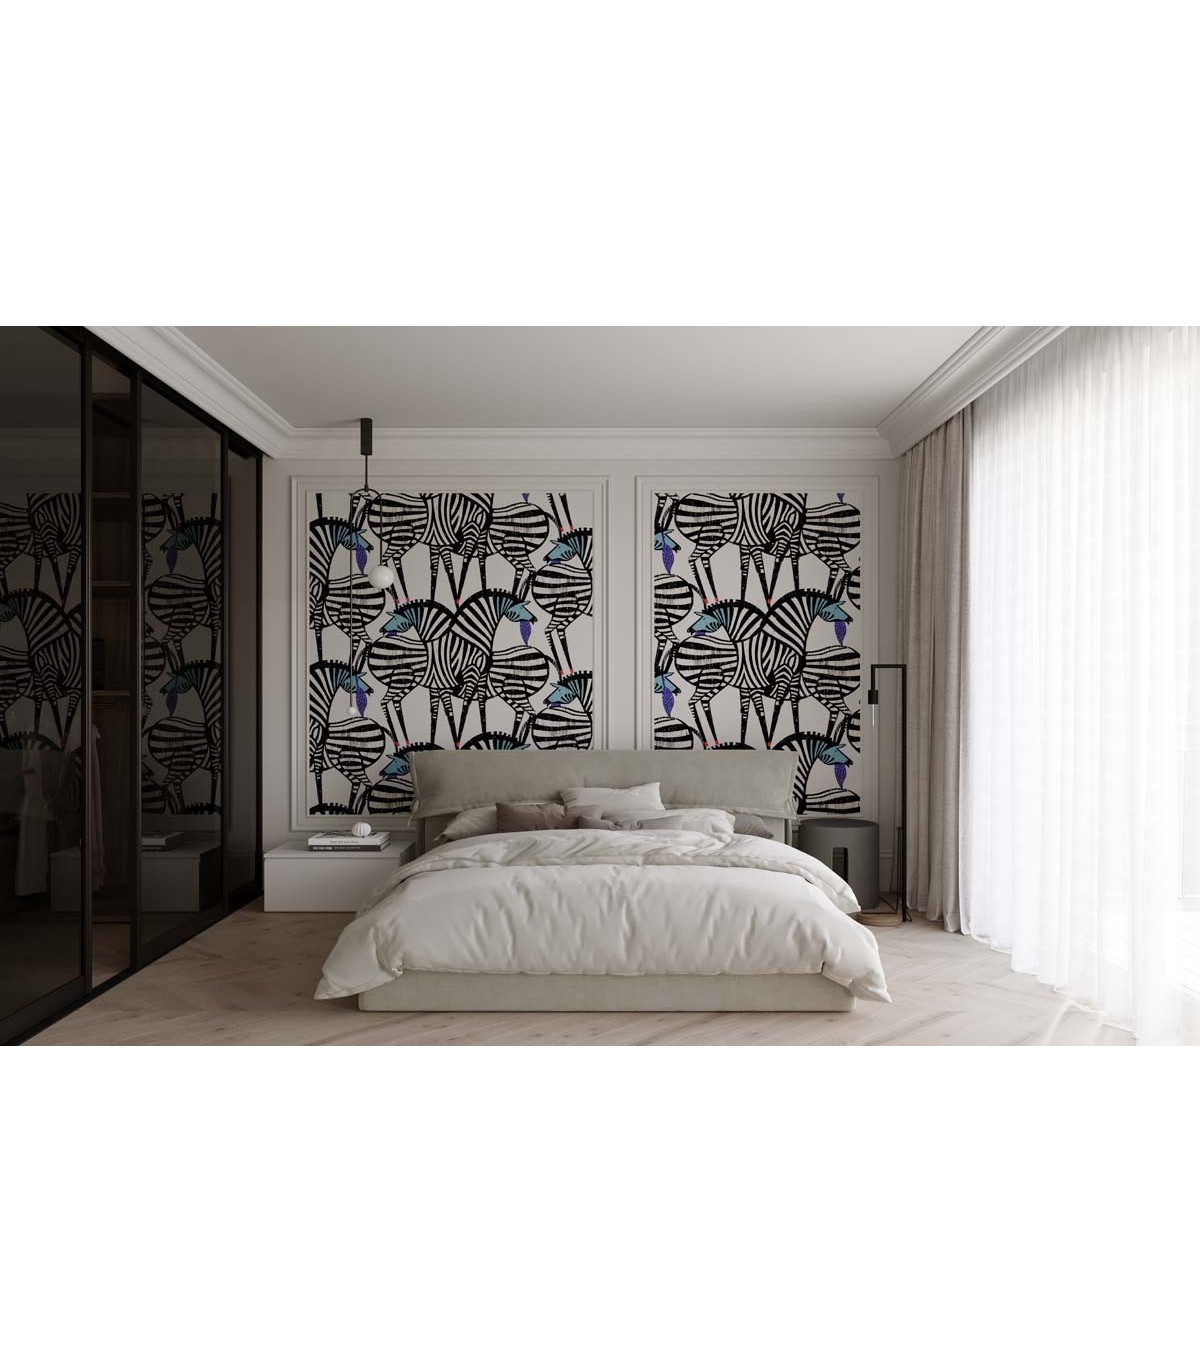 Dancing Zebras wallpaper - Wallcolors  - Exclusive Wallpapers